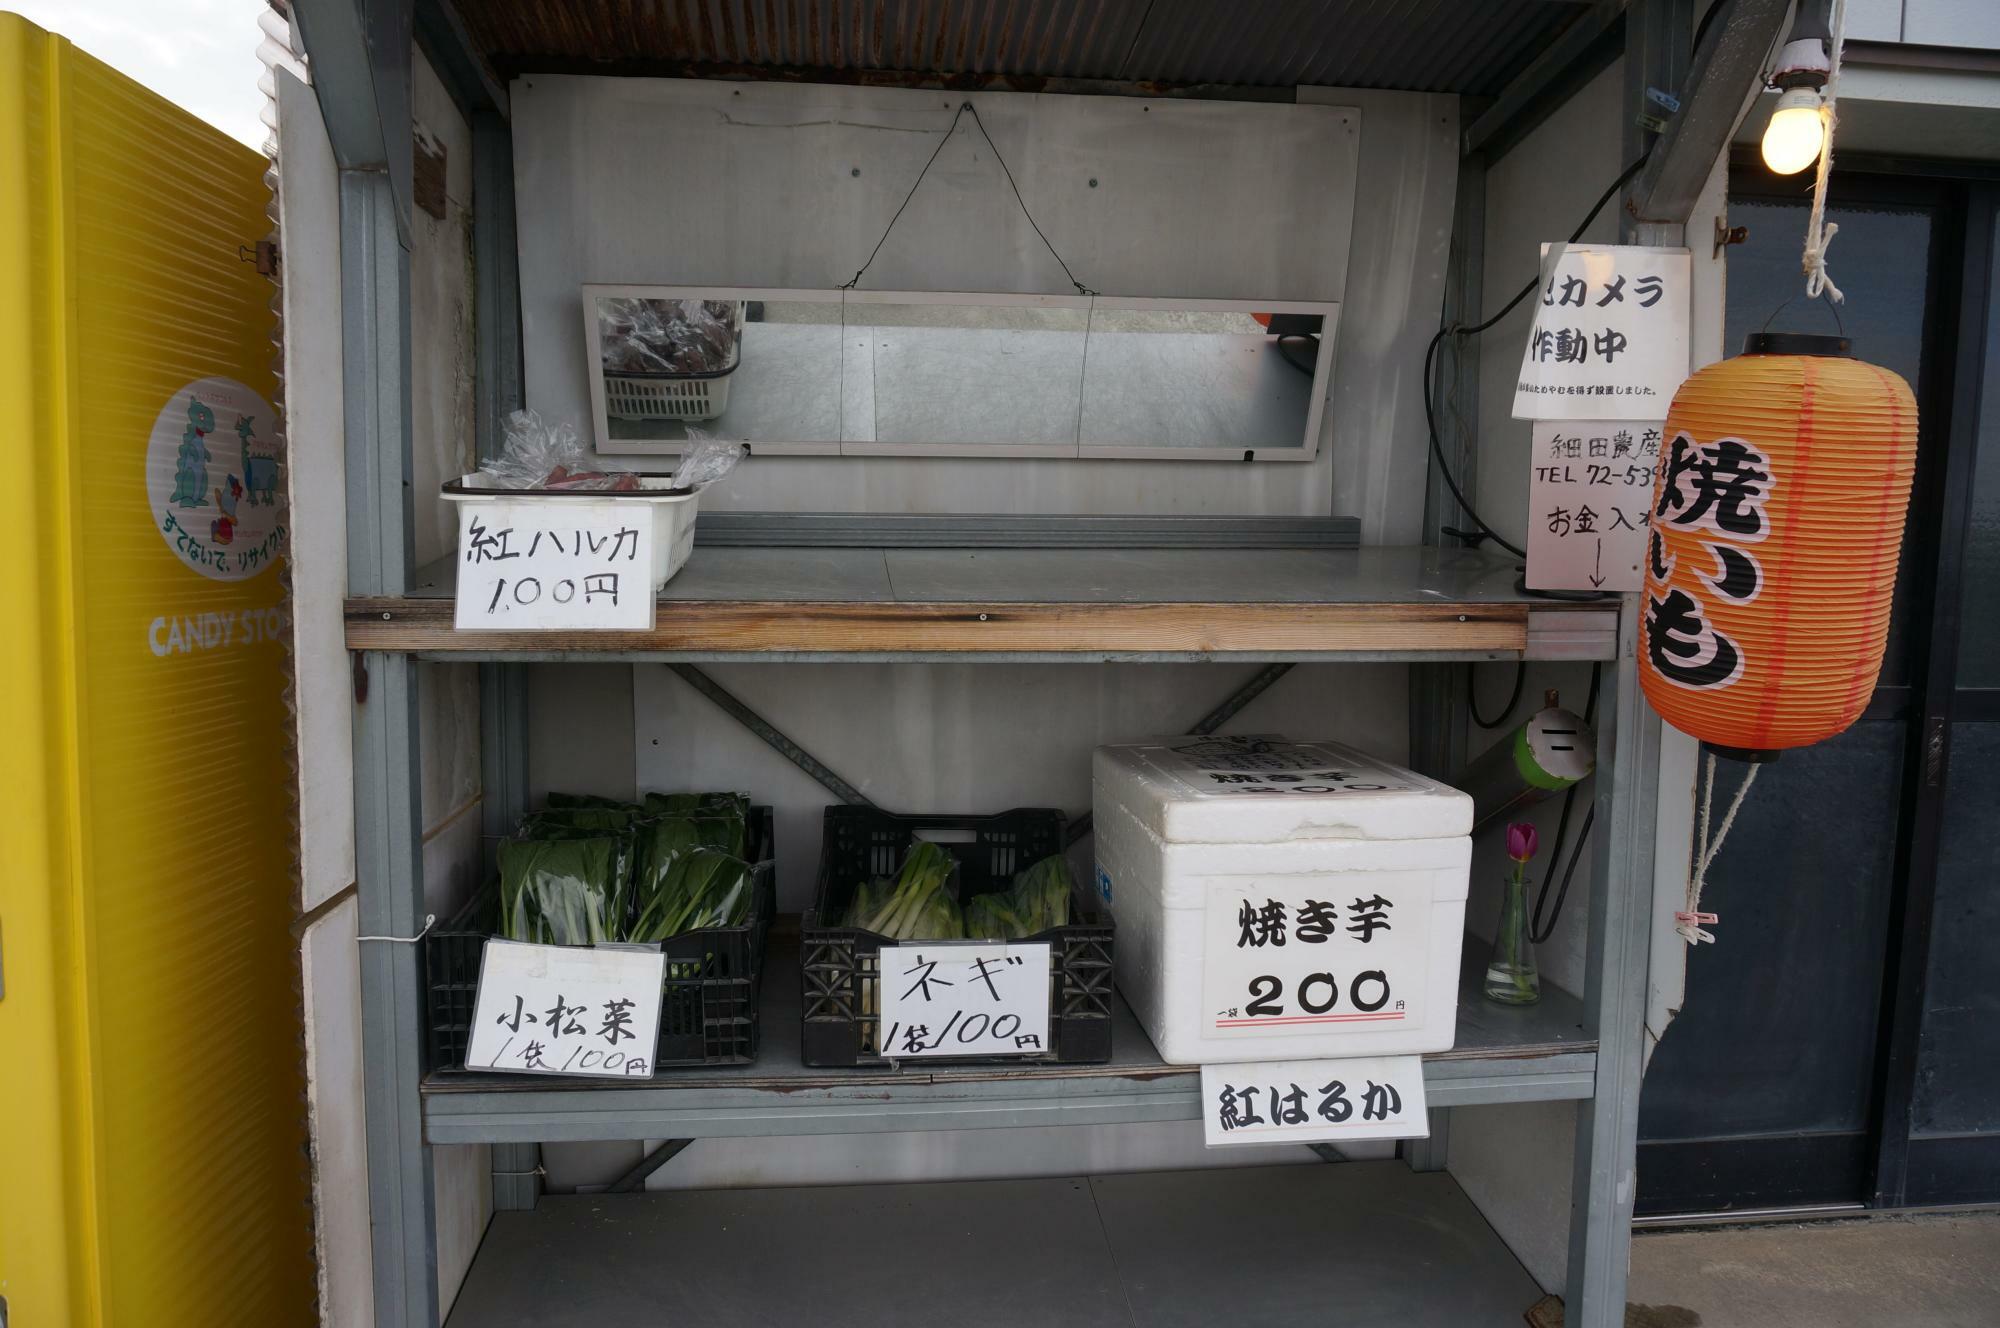 細田農産の無人販売所。焼いもは赤い提灯が目印！「遠くからでも見えるように」と細田さんが設置。